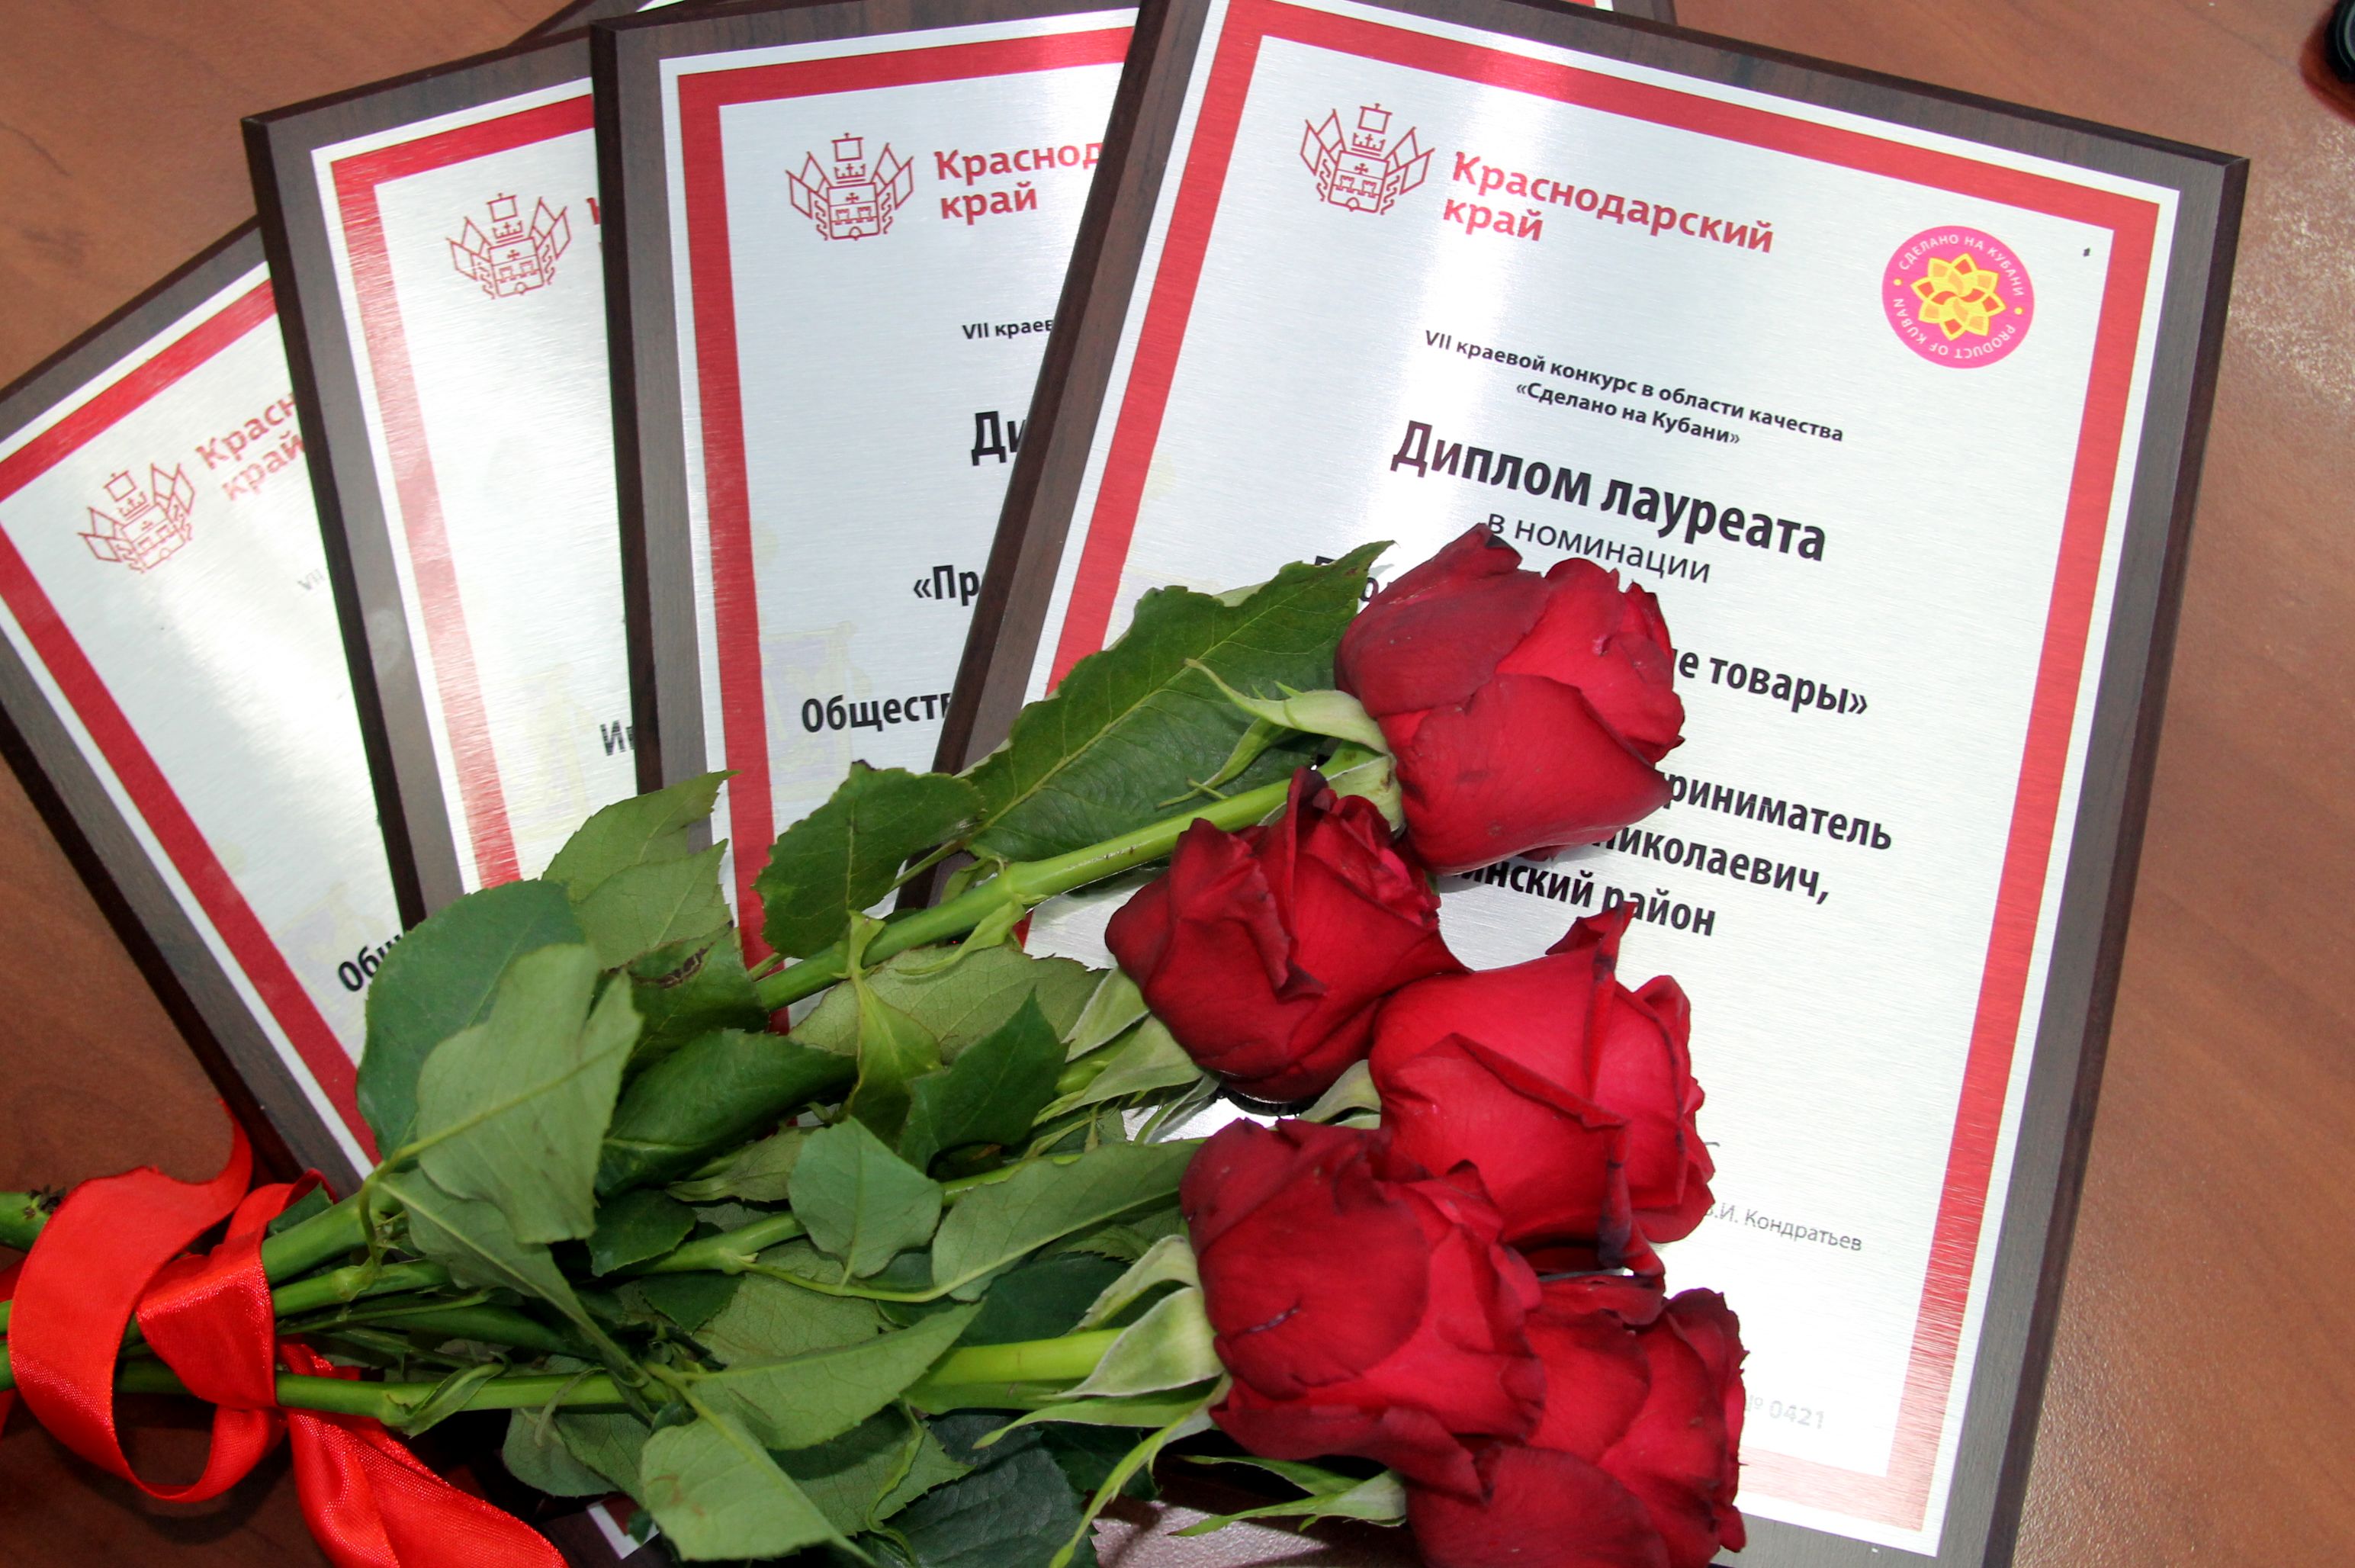 Объявлены победители VII краевого конкурса «Сделано на Кубани»